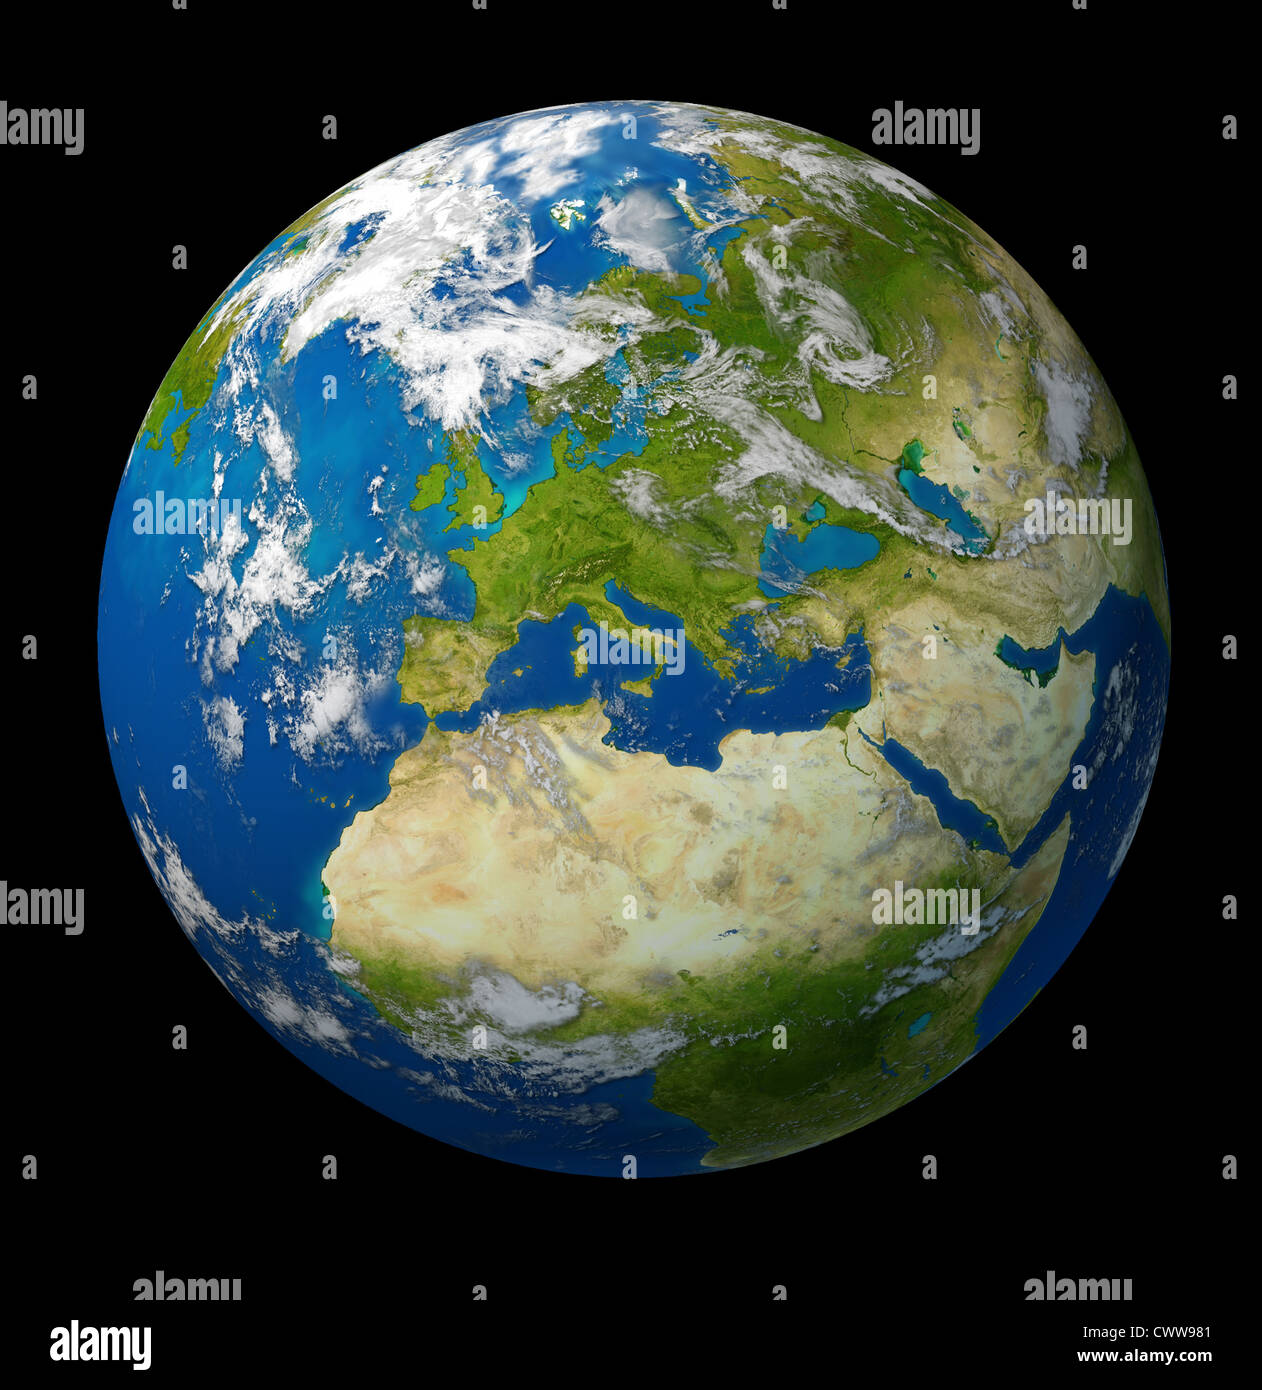 Planetenerde mit Europa und europäische Union Länder einschließlich Deutschland Italien Frankreich und England, umgeben vom blauen Meer und Wolken auf schwarzem Hintergrund. Stockfoto